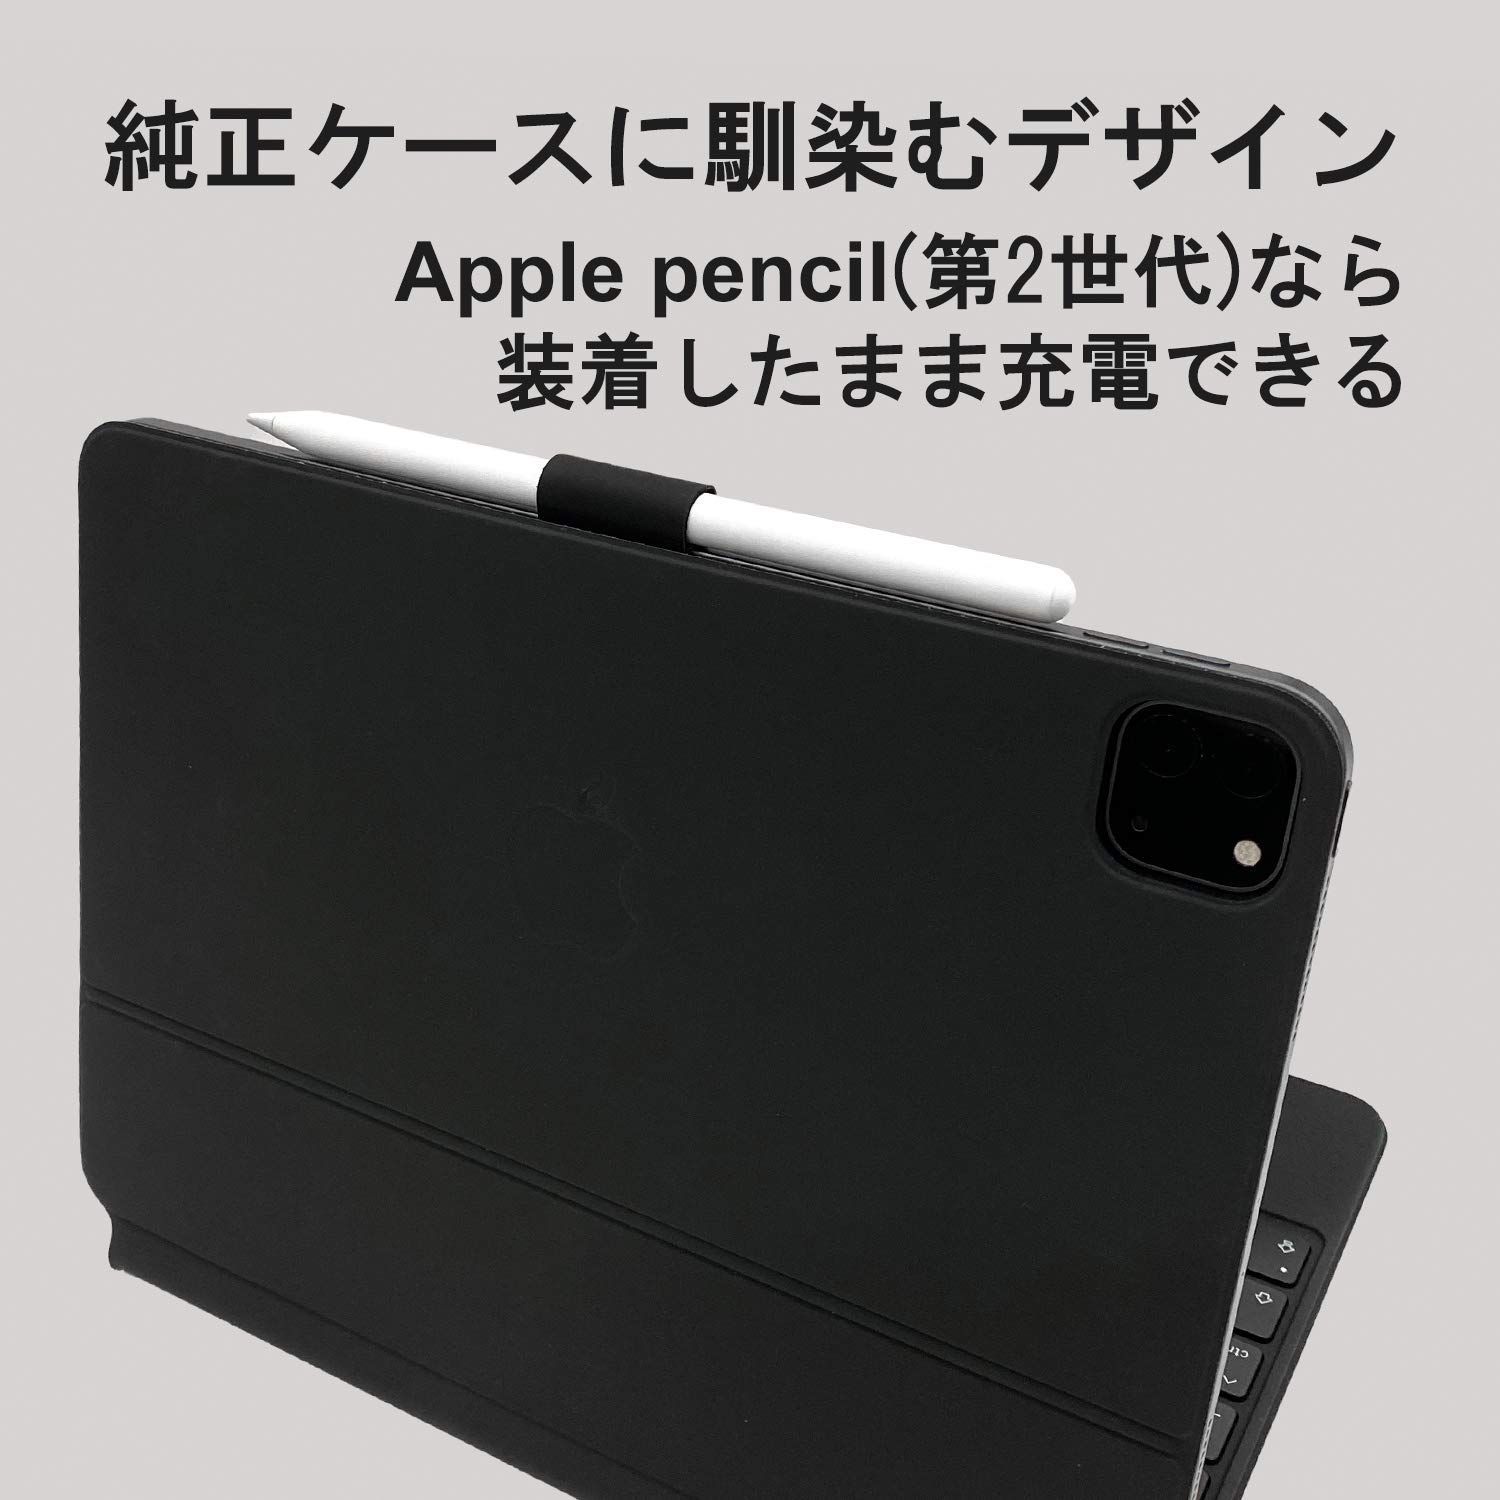 Apple 【SALE】iPad 手帳 iPhone 【3枚組】 貼付タイプ 接着シール ホルダー S-Pen スタイラス タッチペン などに